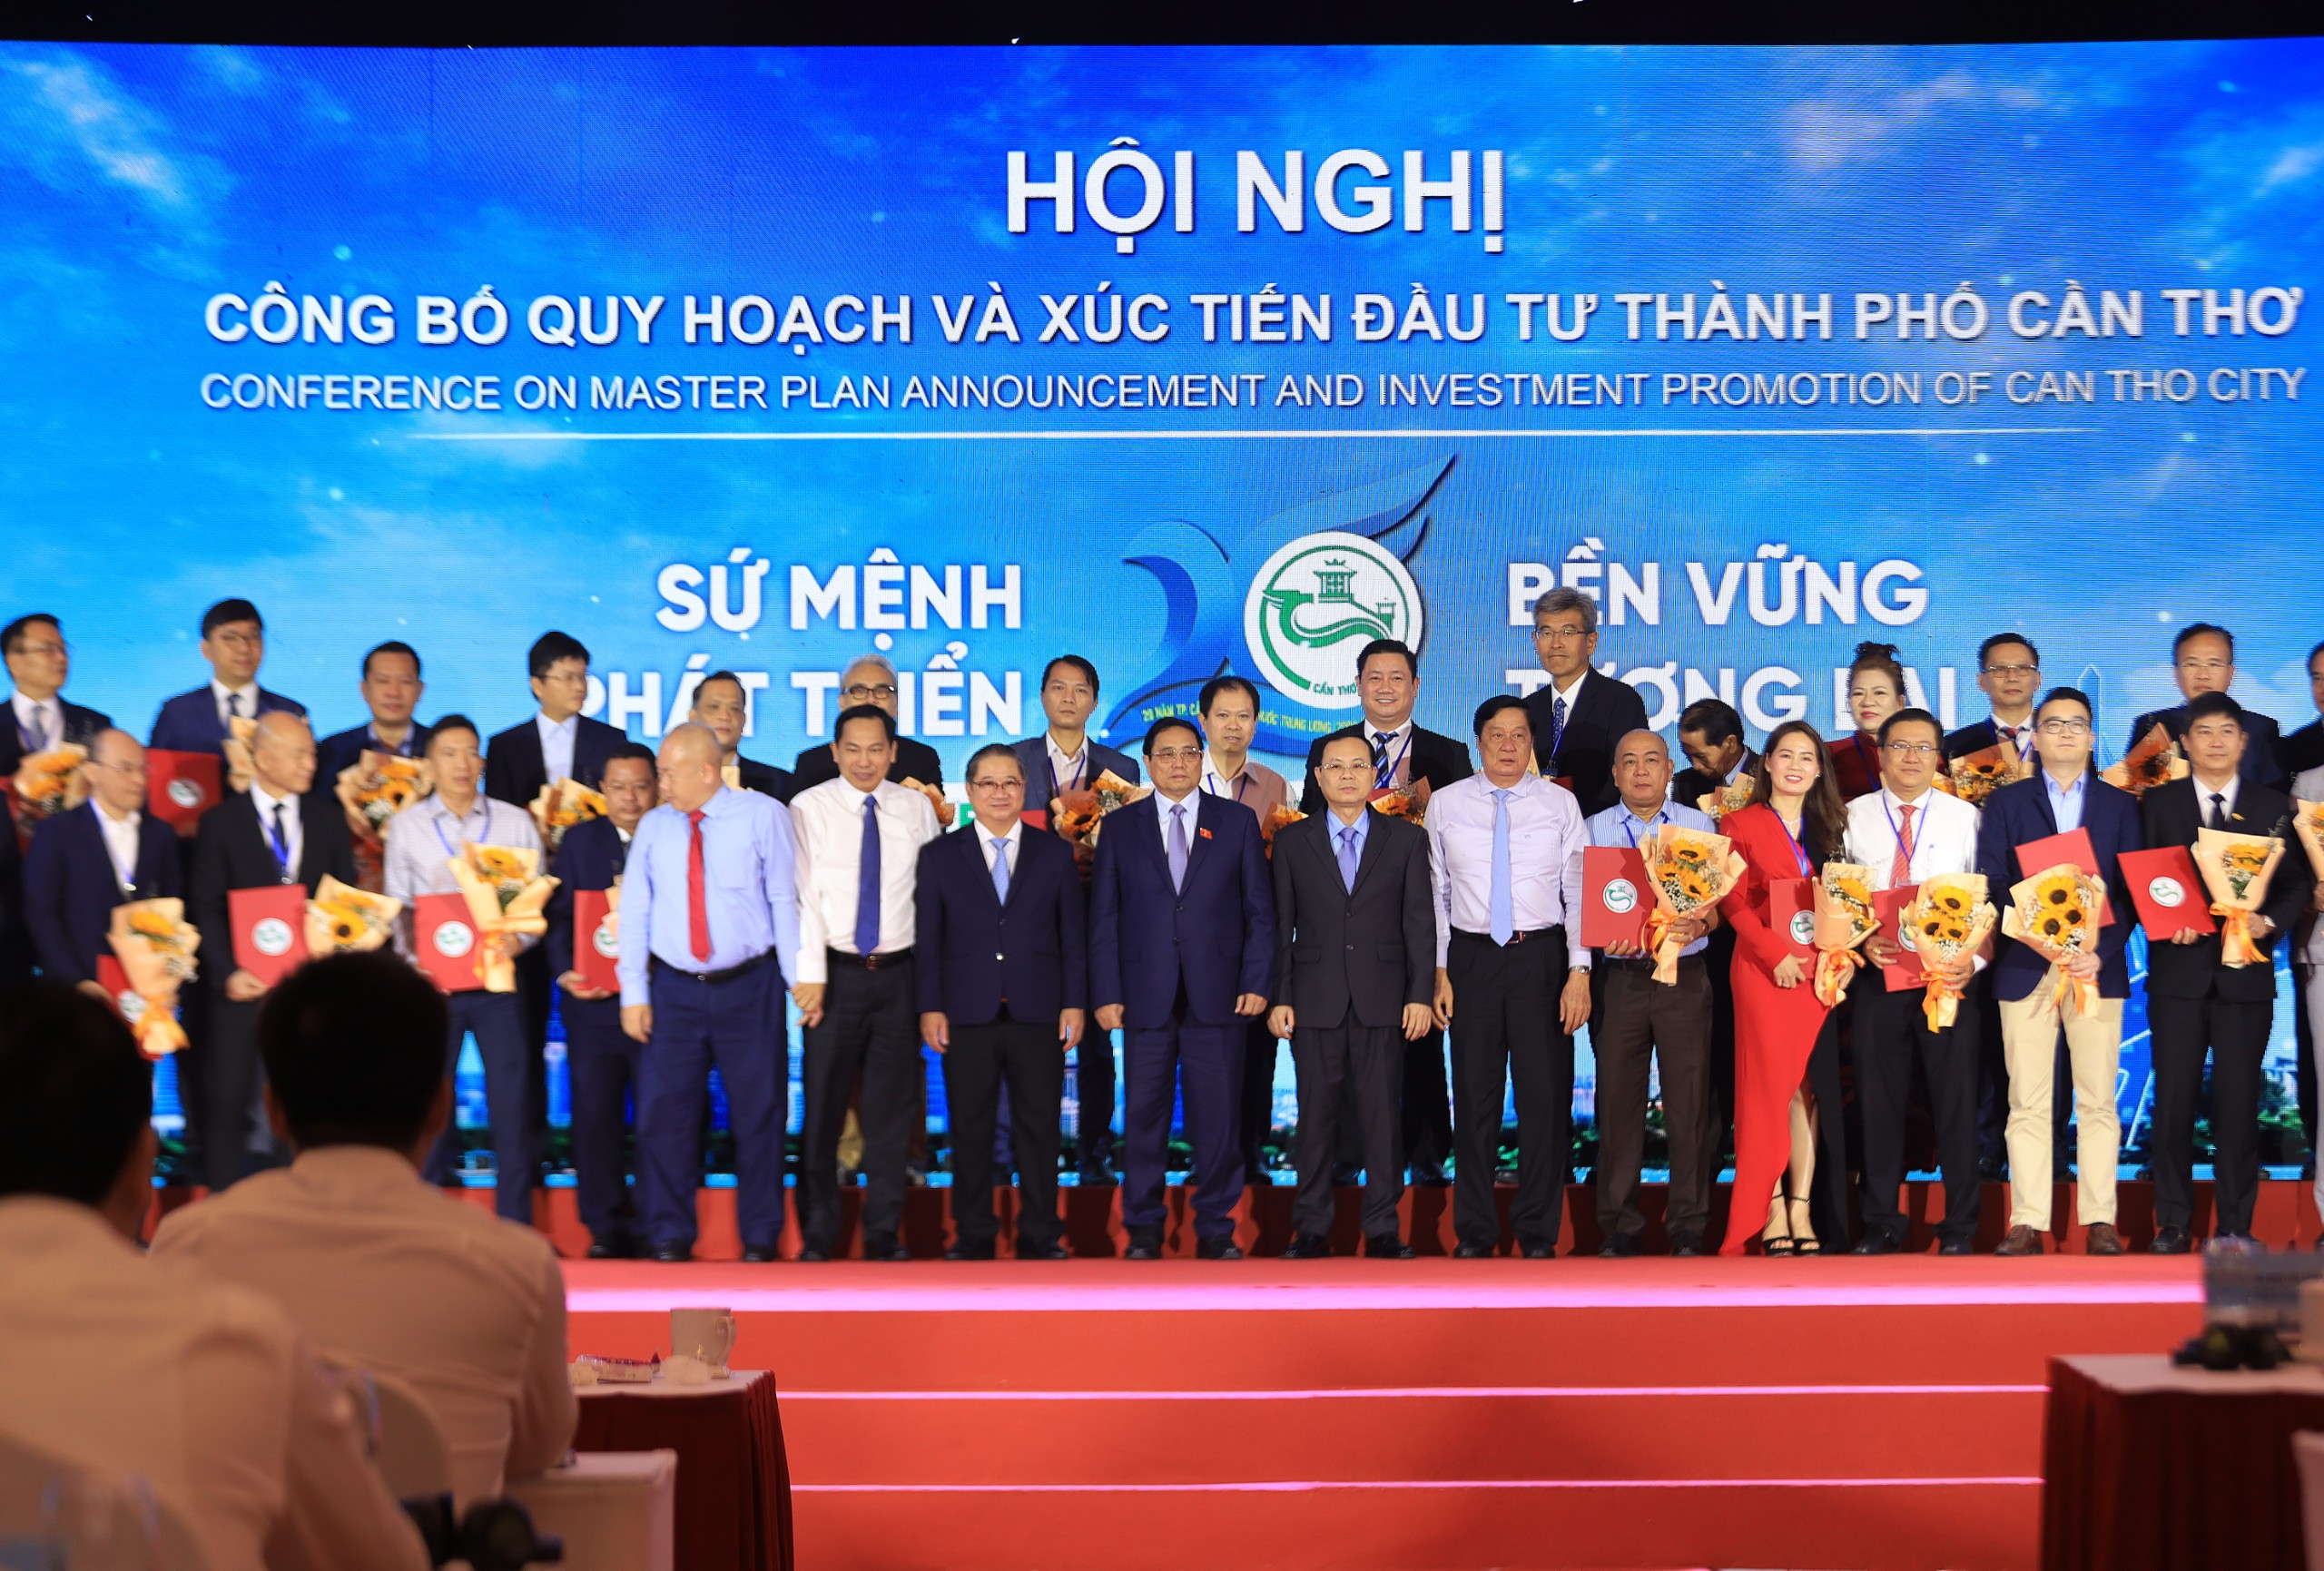 Thủ tướng Chính phủ Phạm Minh Chính chụp hình lưu niệm cùng lãnh đạo TP. Cần Thơ và các nhà đầu tư trong các lĩnh vực.